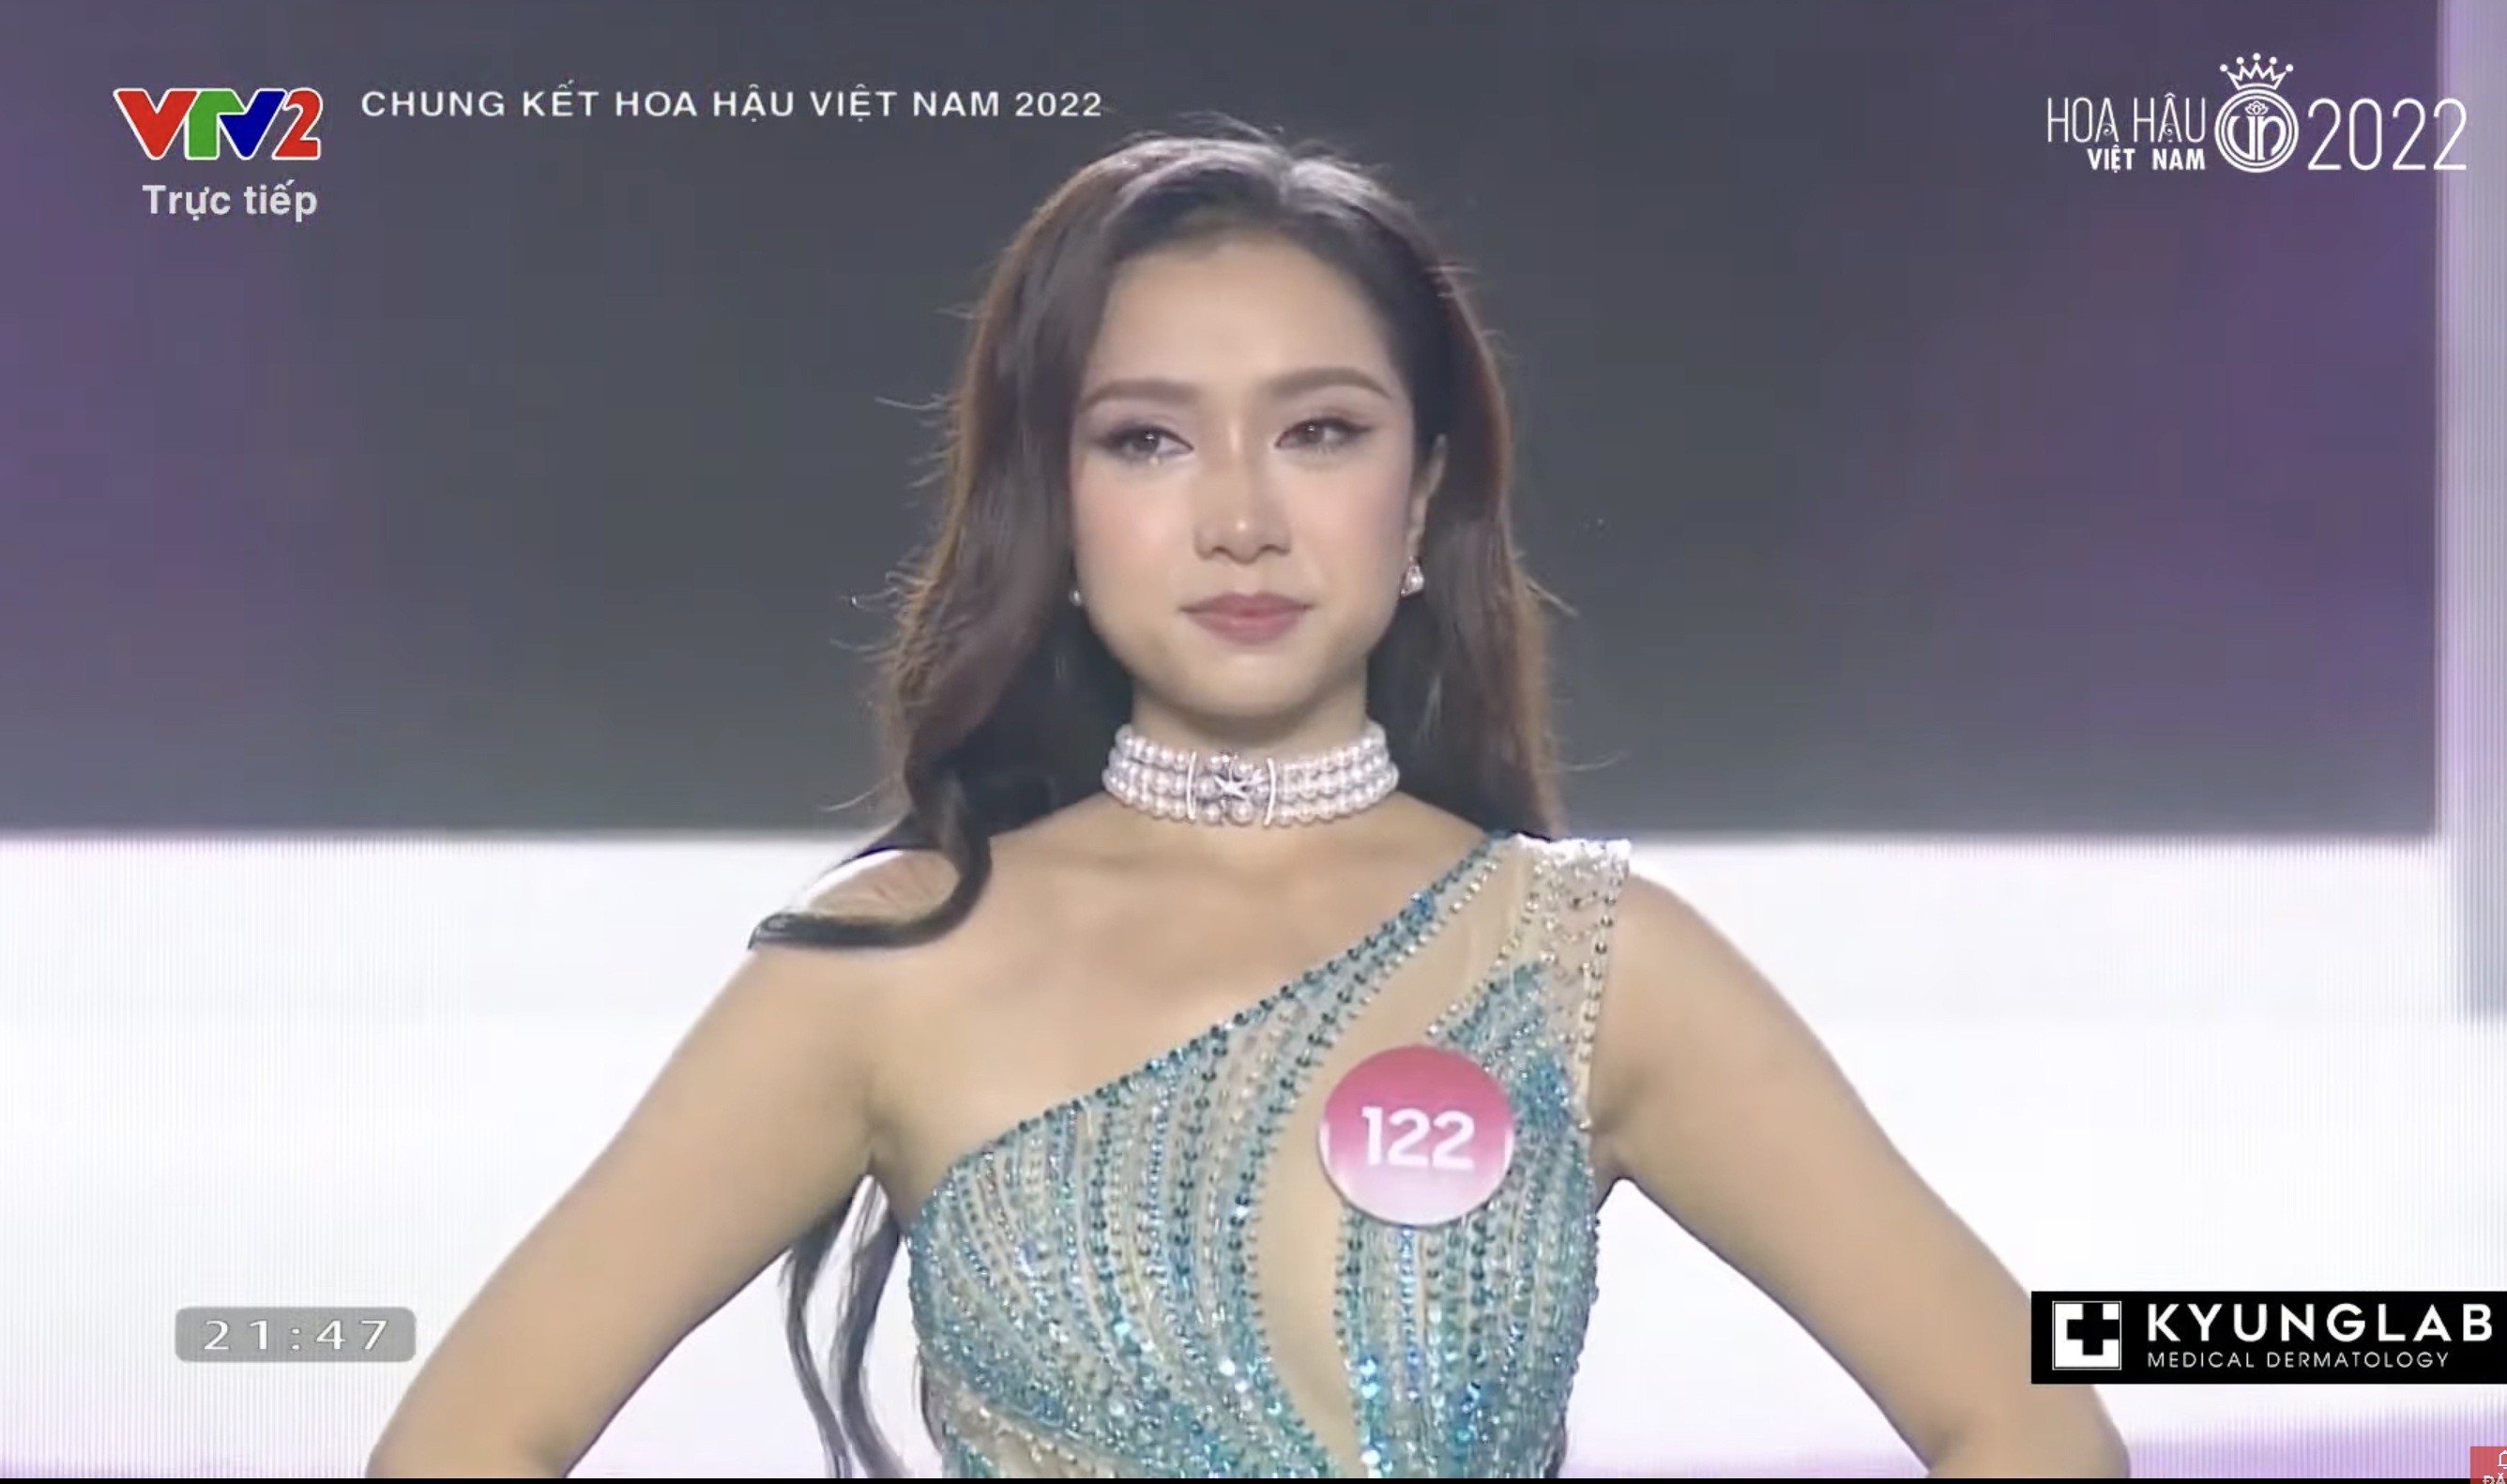 Chung kết Hoa hậu Việt Nam 2022: Tân Hoa hậu chính thức gọi tên Huỳnh Thị Thanh Thuỷ - 16